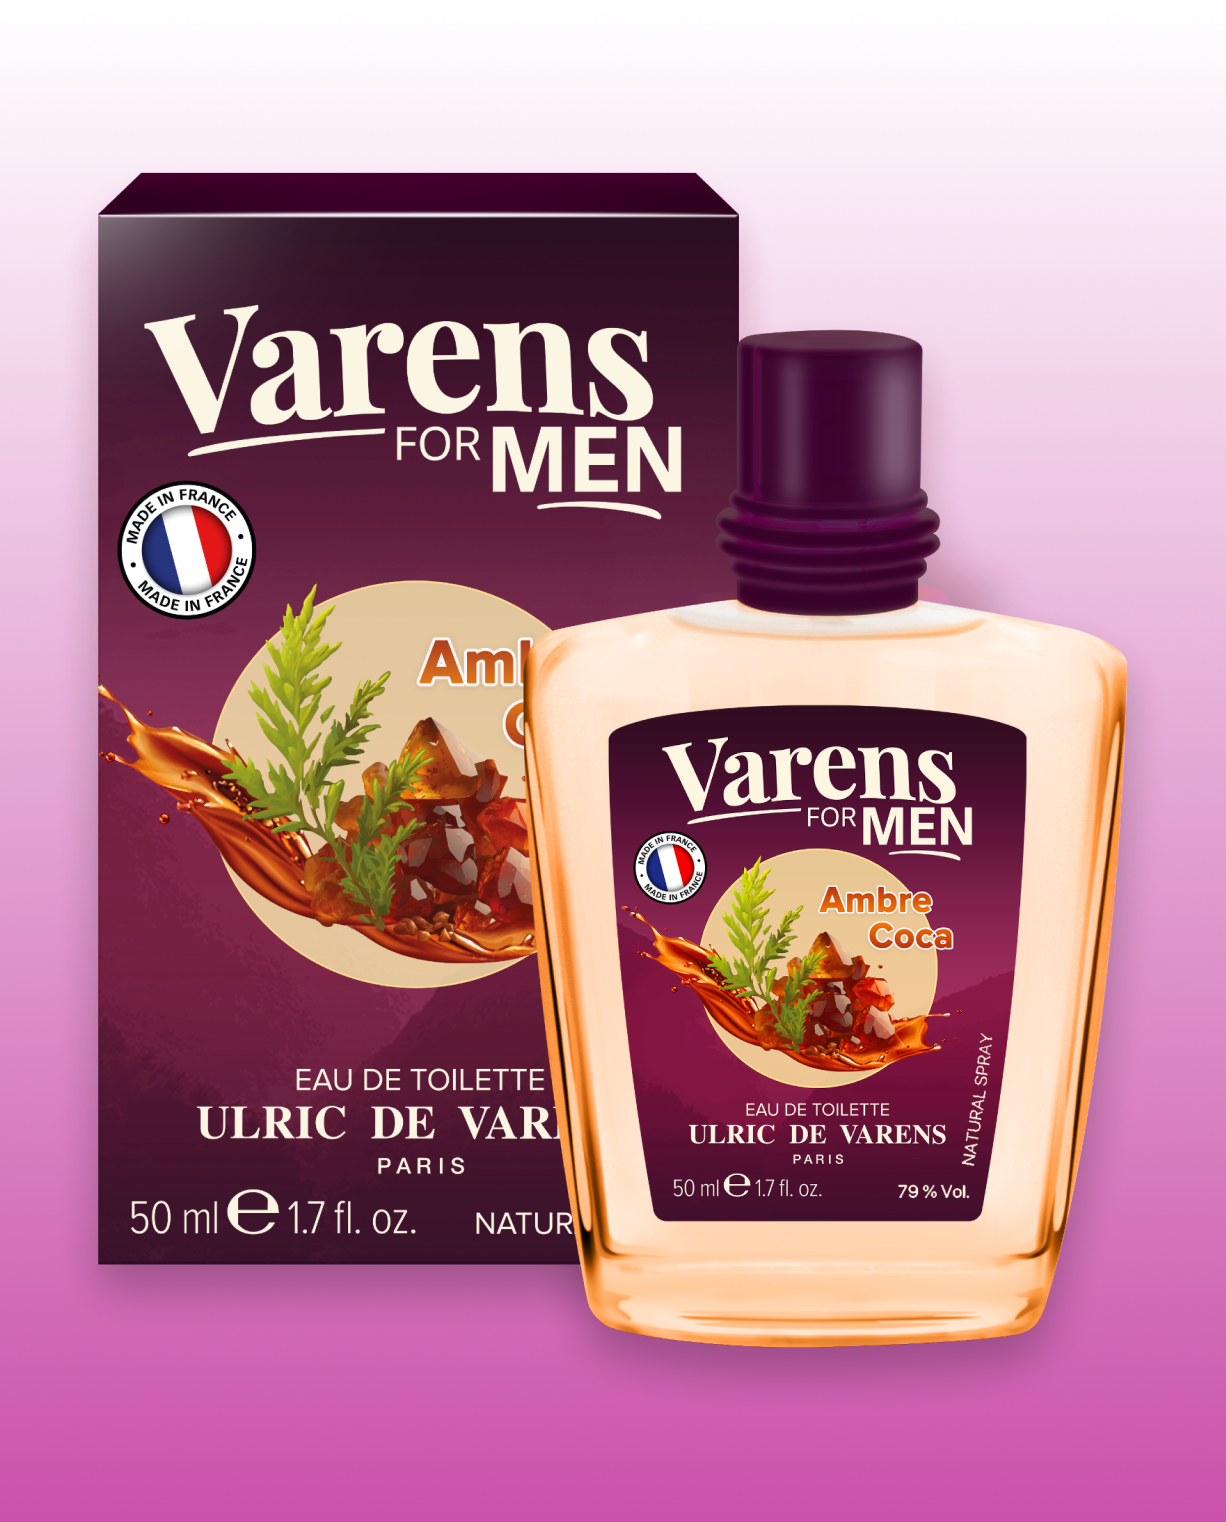 Varens For Men Ambre Coca - Ulric de Varens -  - #tag1# - #tag2# - #tag3# - #tag4#